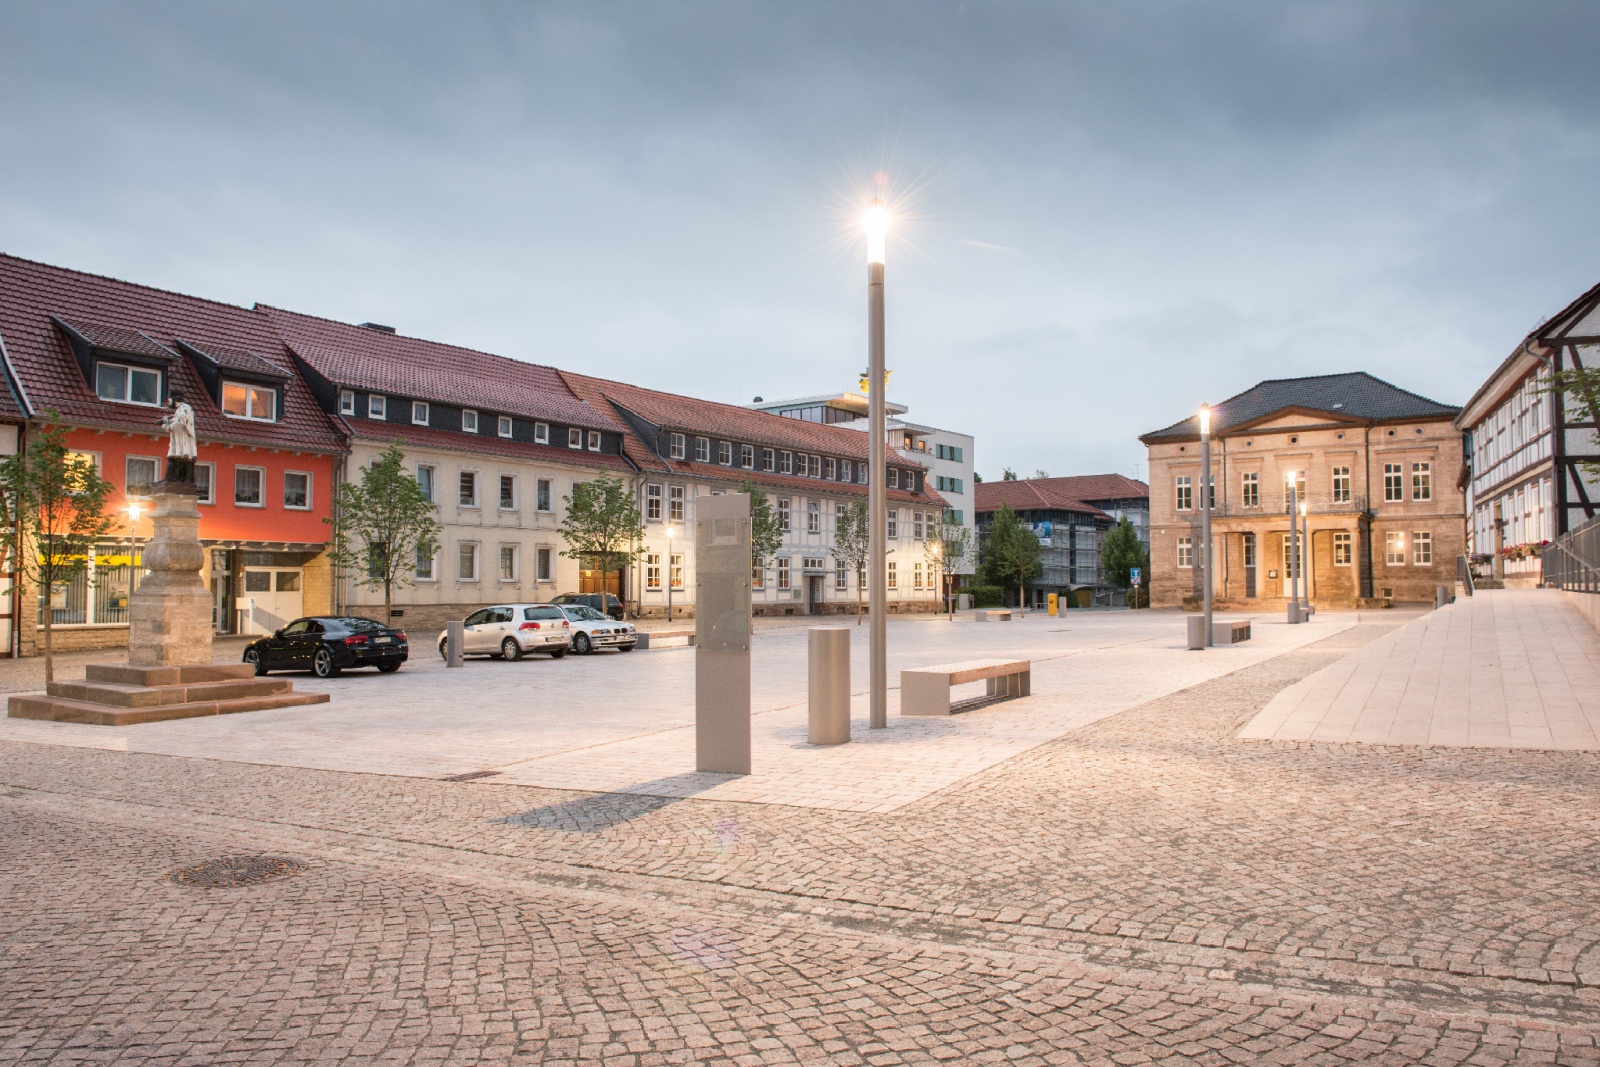 Friedensplatz und Rossmarkt Worbis, Friedensplatz mit Denkmal St. Nepomuk, Bild: Thomas Langreder